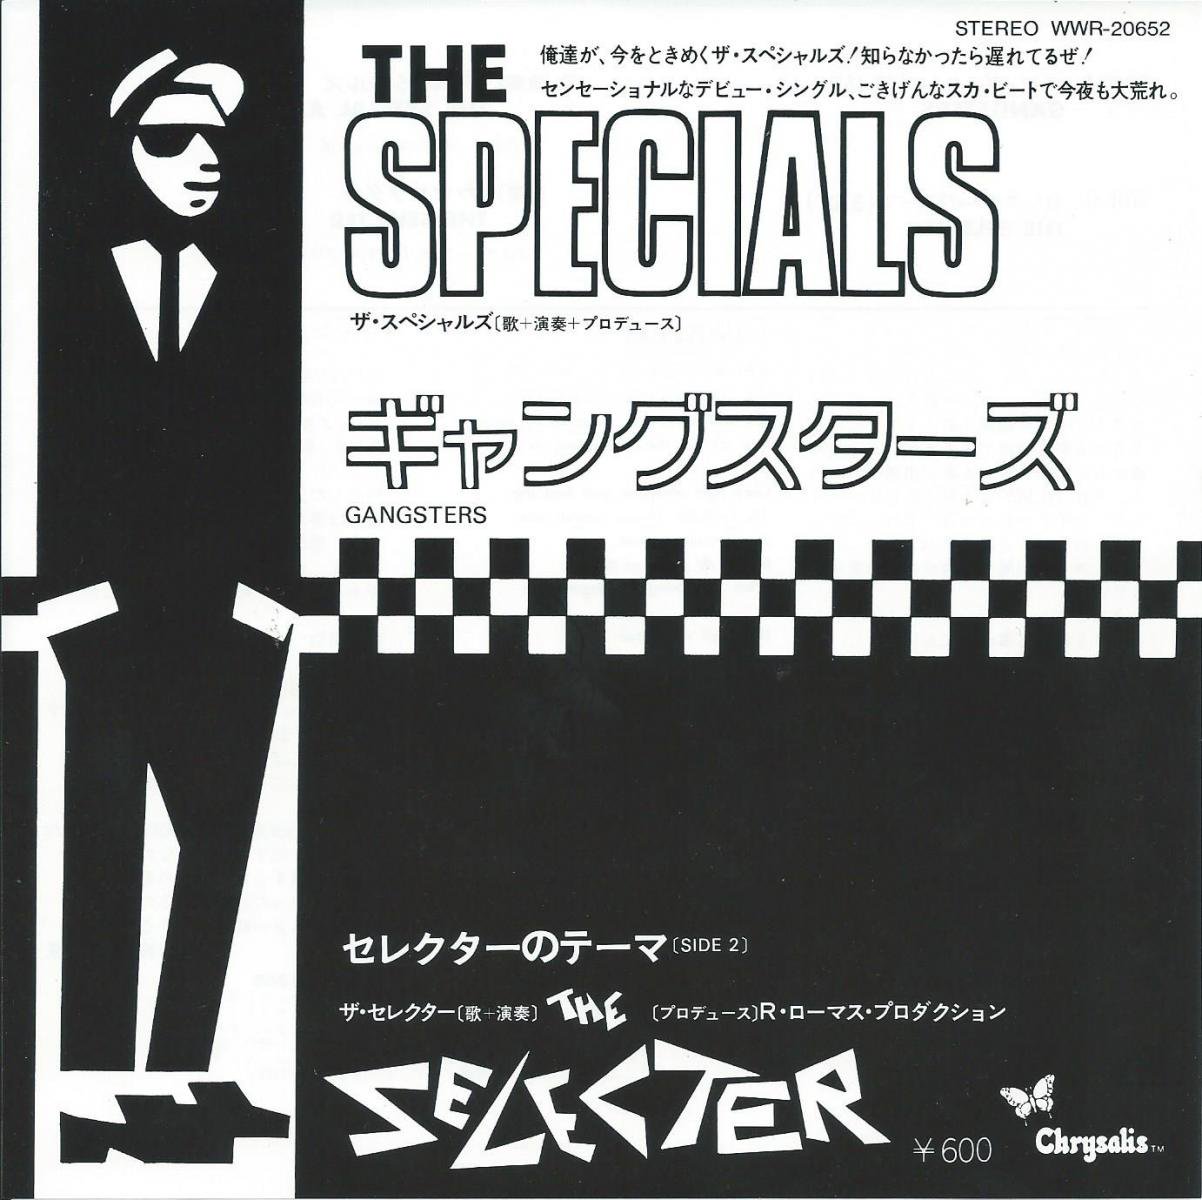 ザ・スペシャルズ THE SPECIALS / ギャングスターズ GANGSTERS / セレクターのテーマ THE SELECTER (7